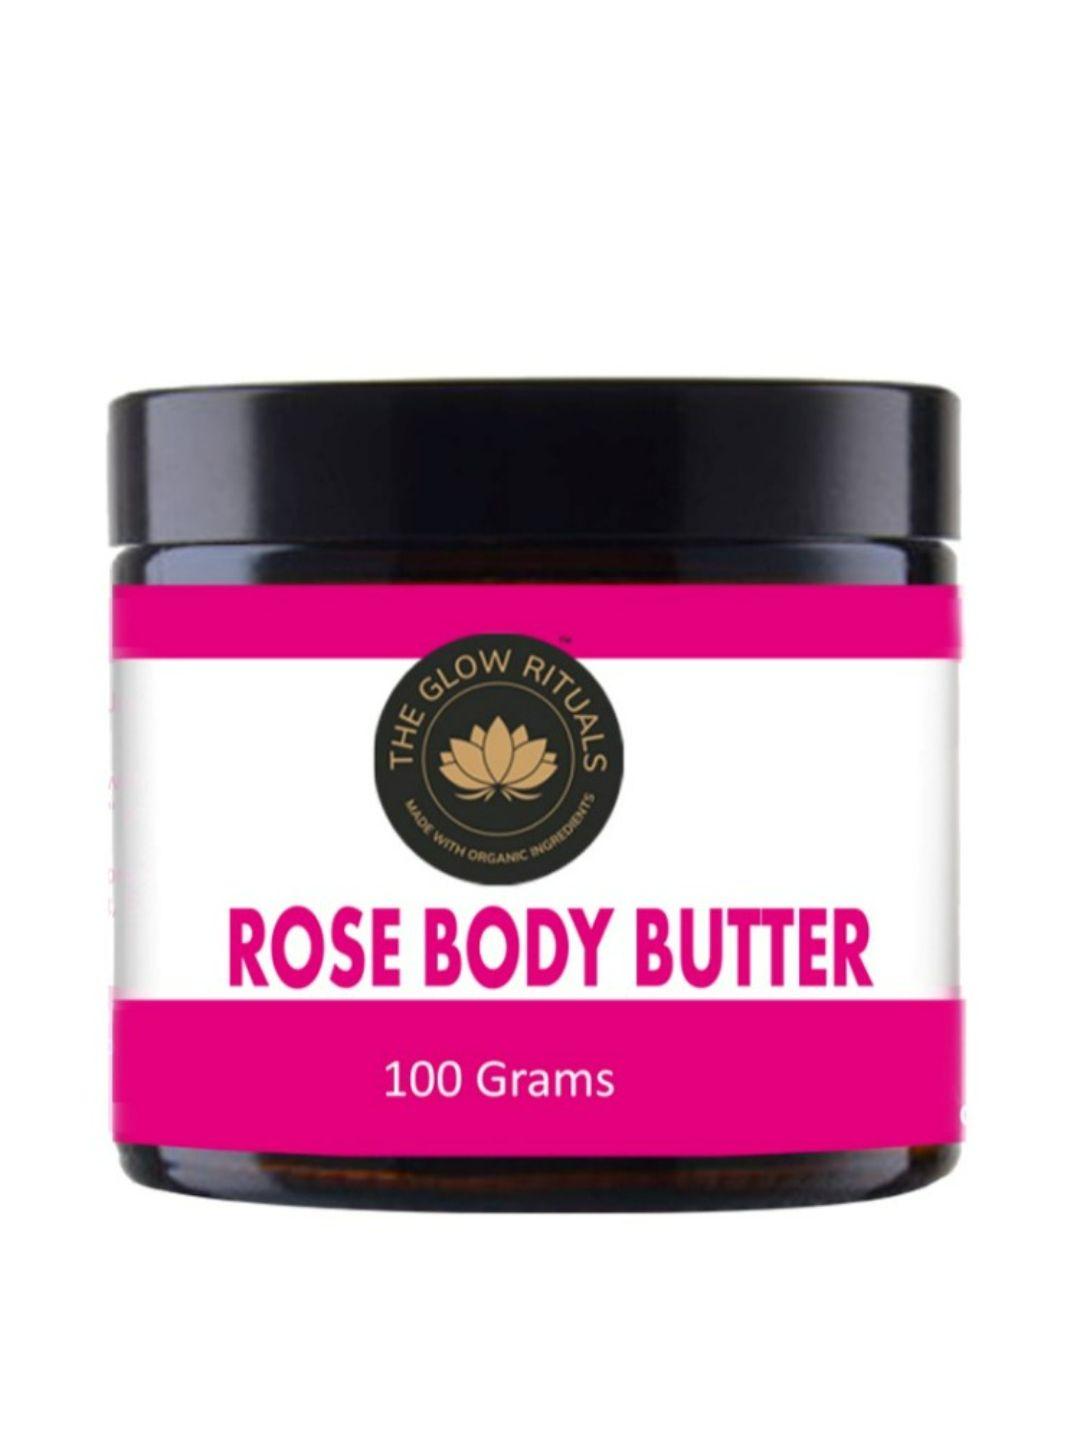 the glow rituals rose body butter 100 gm